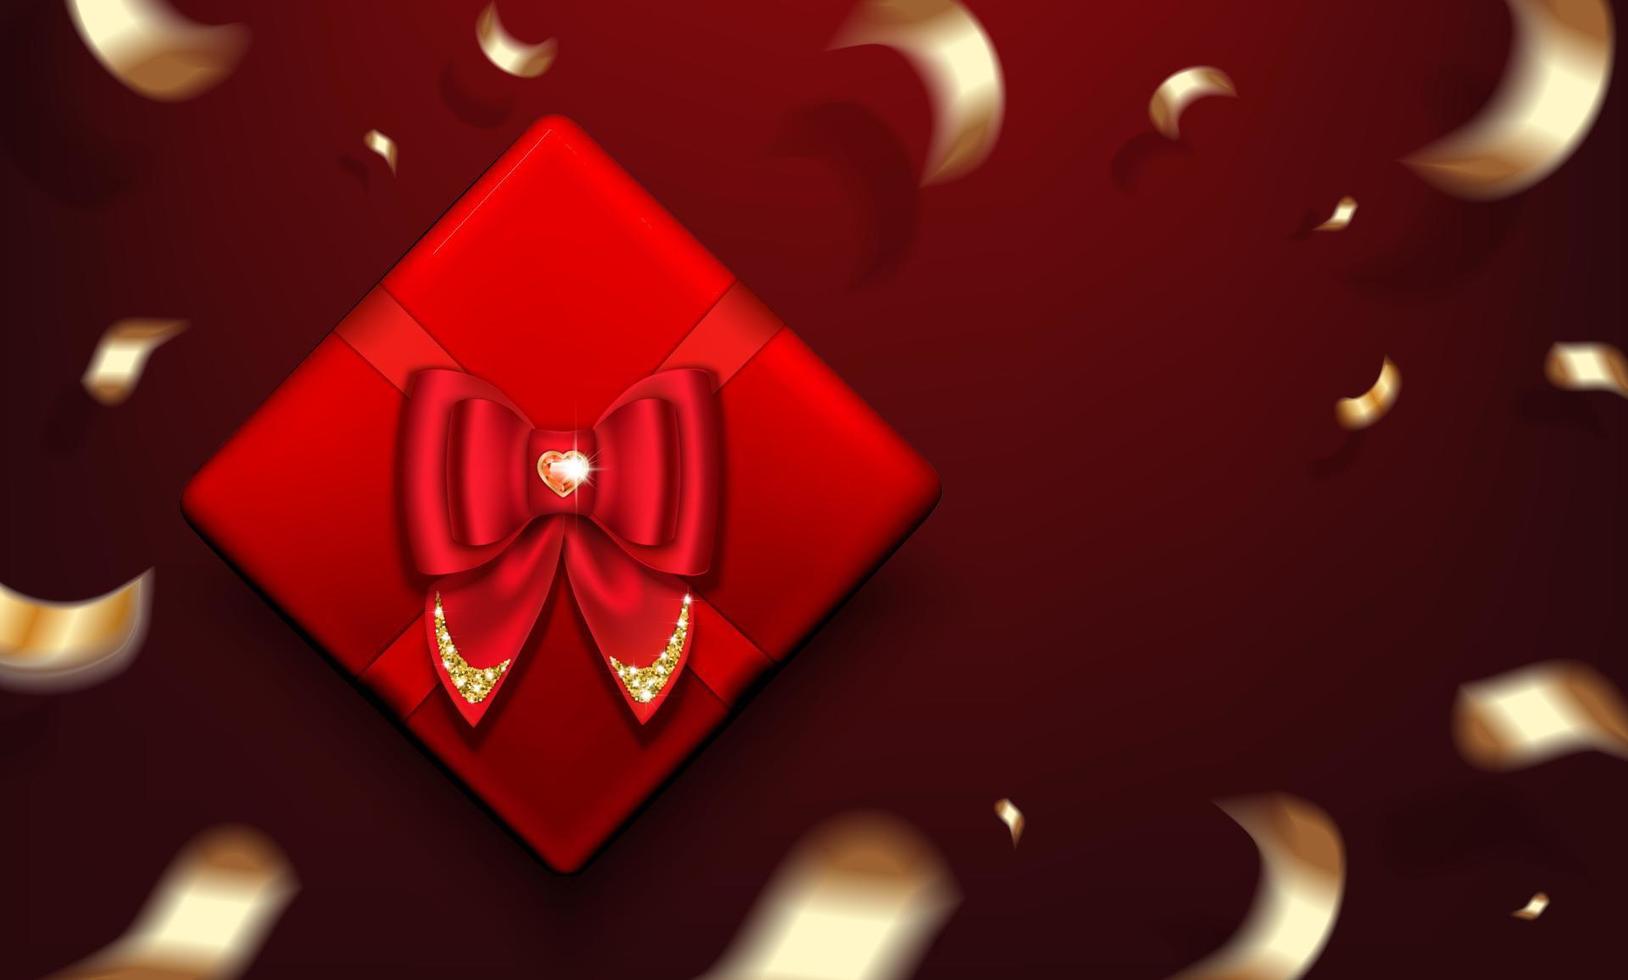 caixa de presente vermelha com um laço e uma pedra preciosa em forma de coração rubi. serpentina dourada. cartaz para o dia dos namorados, natal. ilustração vetorial realista. vetor